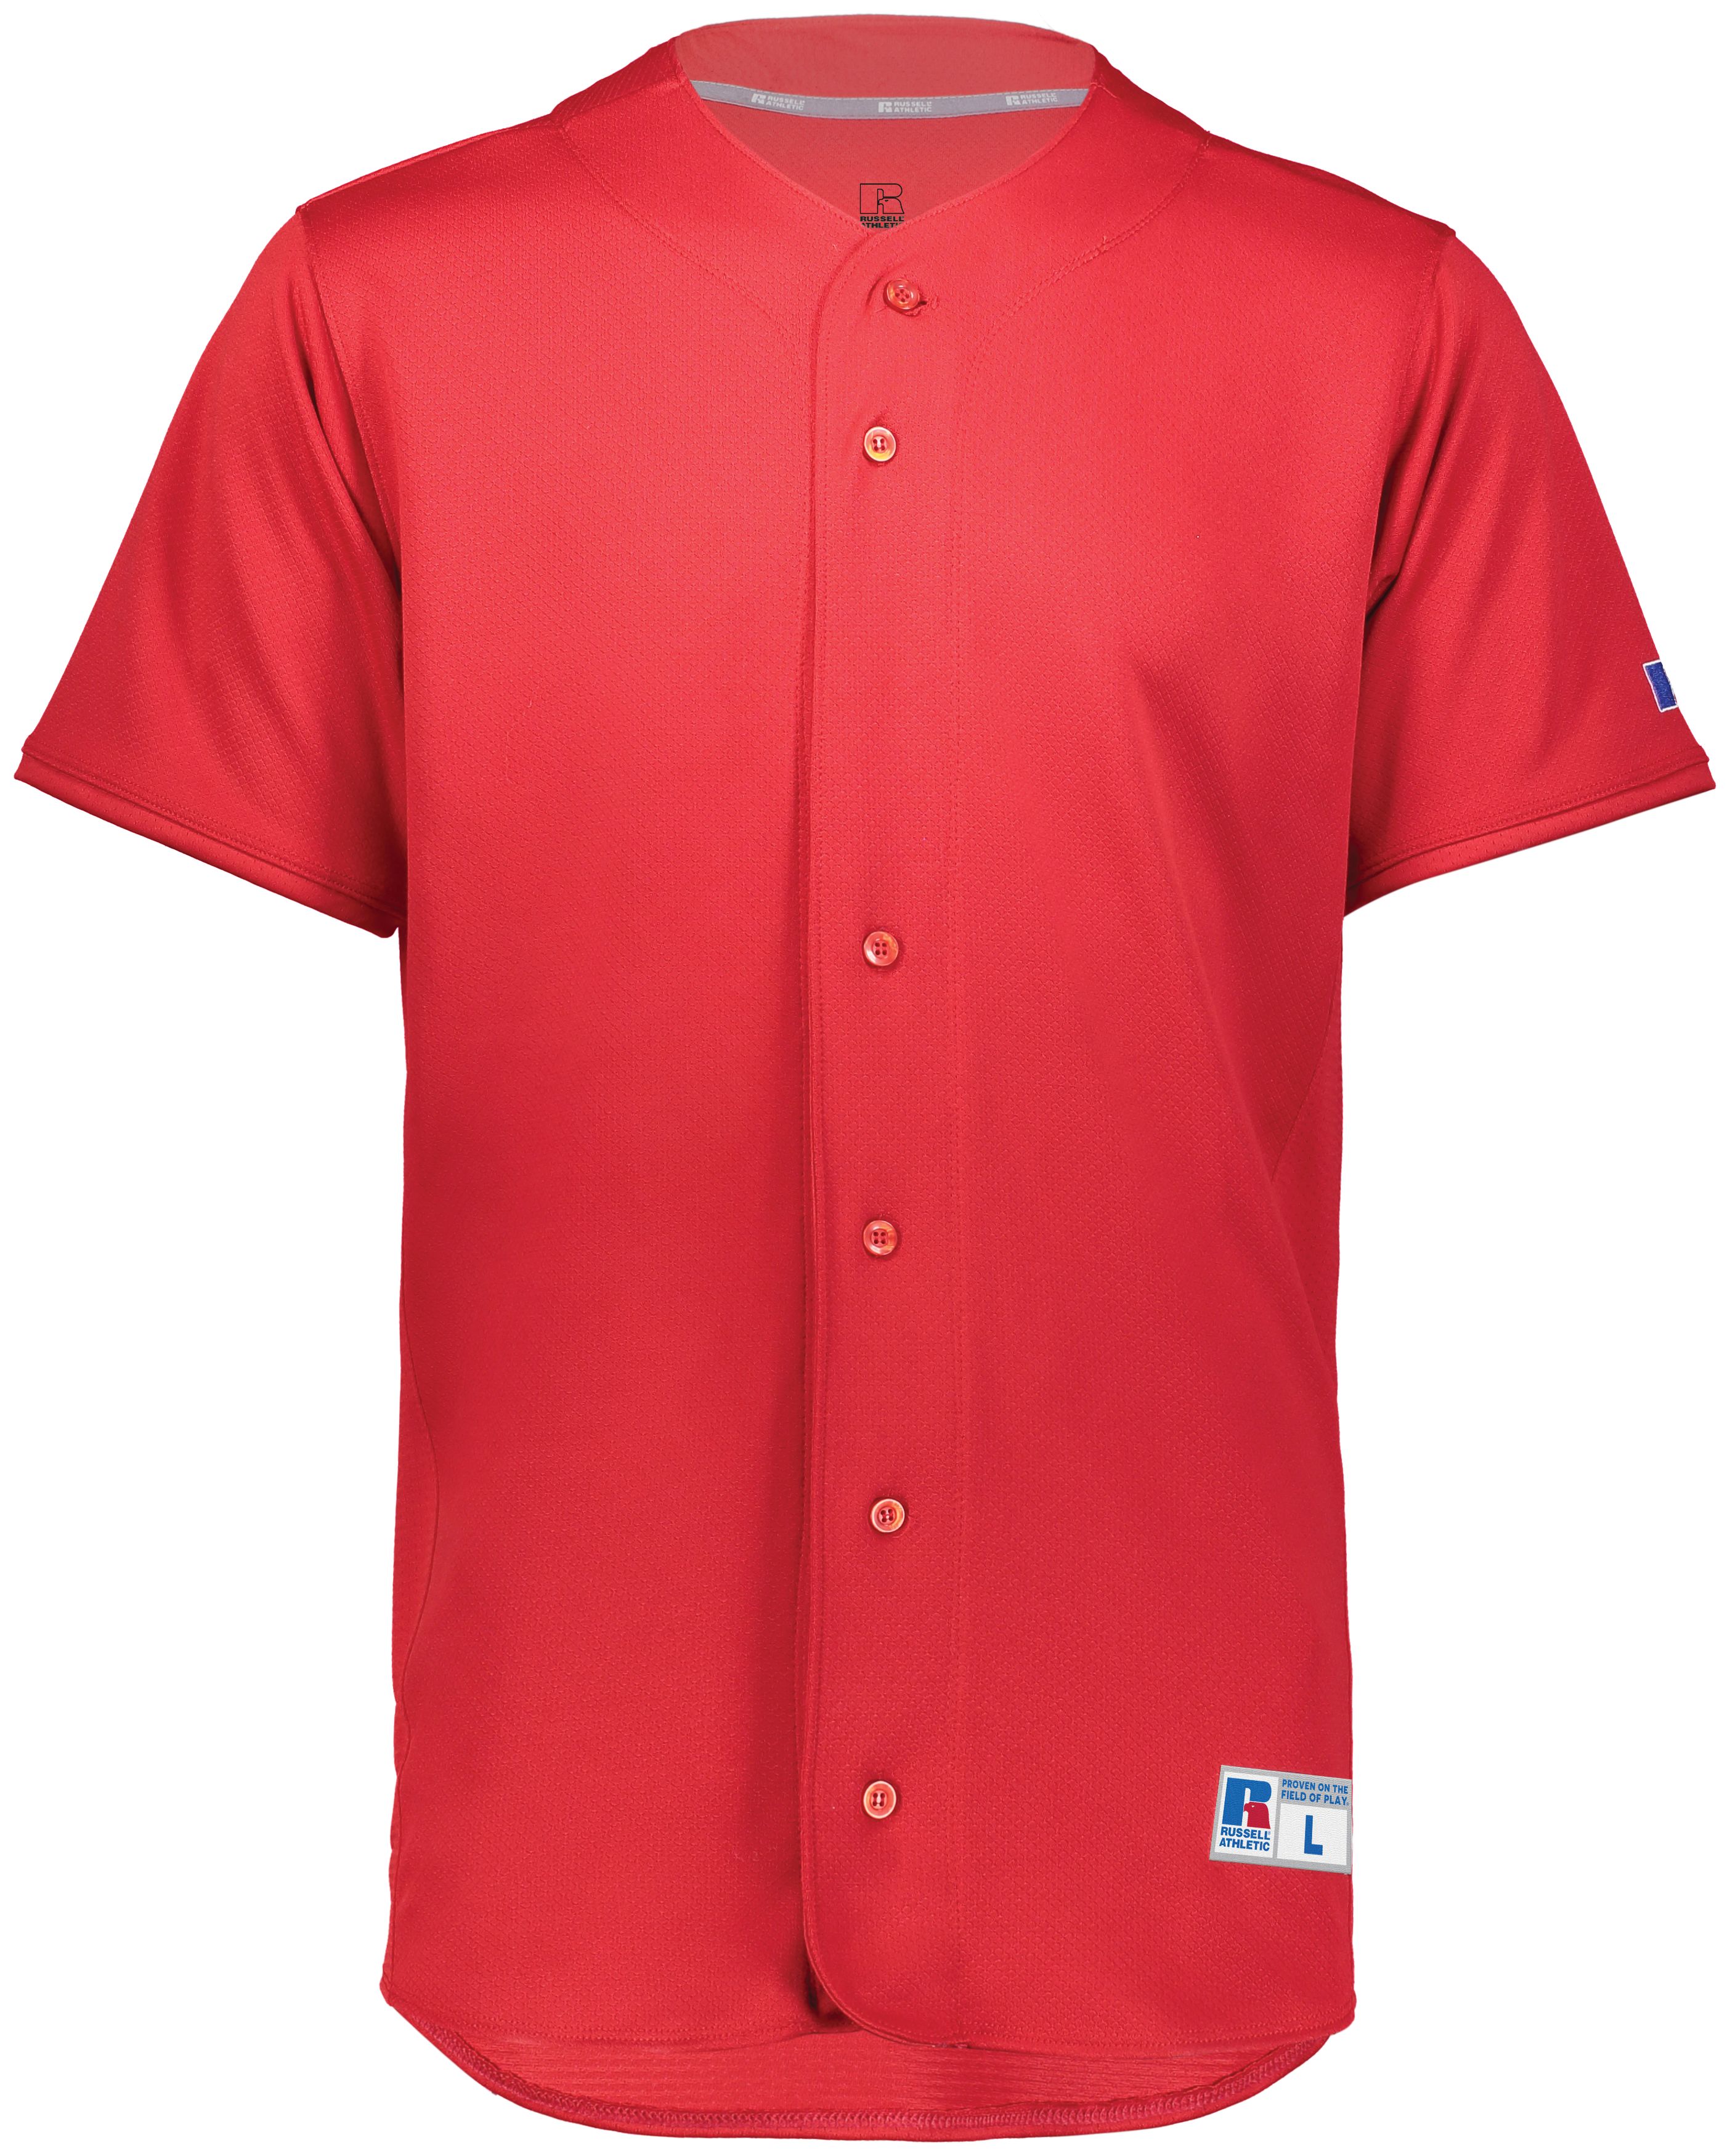 Augusta XL Full-Button Baseball Jersey Navy/Red 1655 